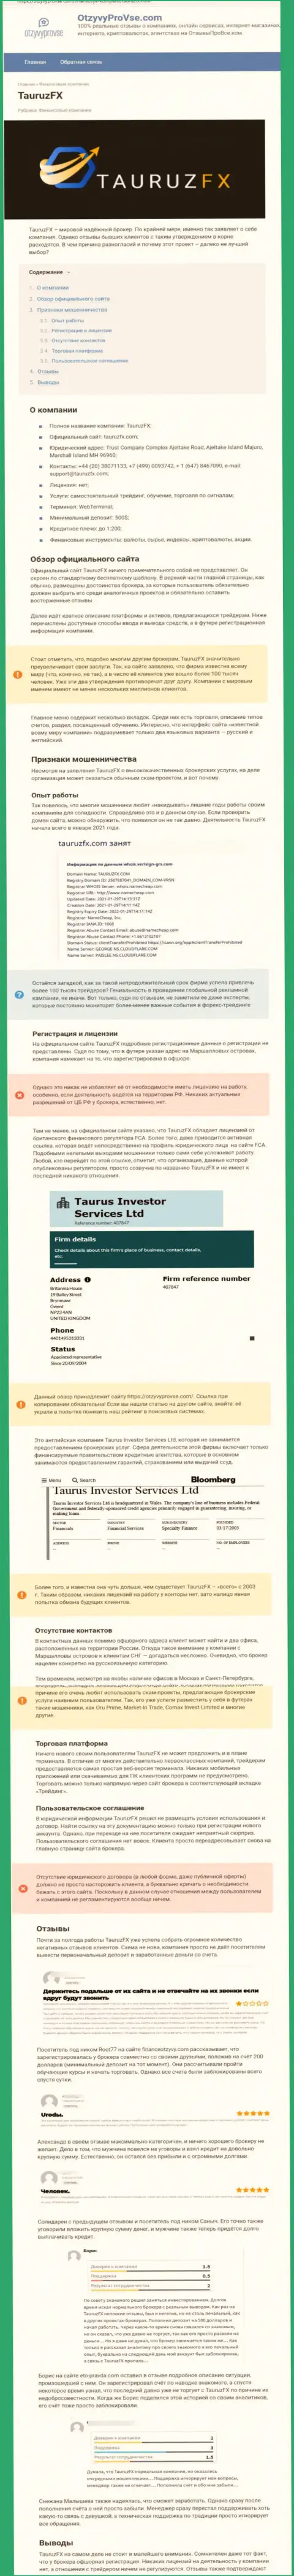 Tauruz FX финансовые активы обратно не выводит, так что стараться не нужно (обзор)